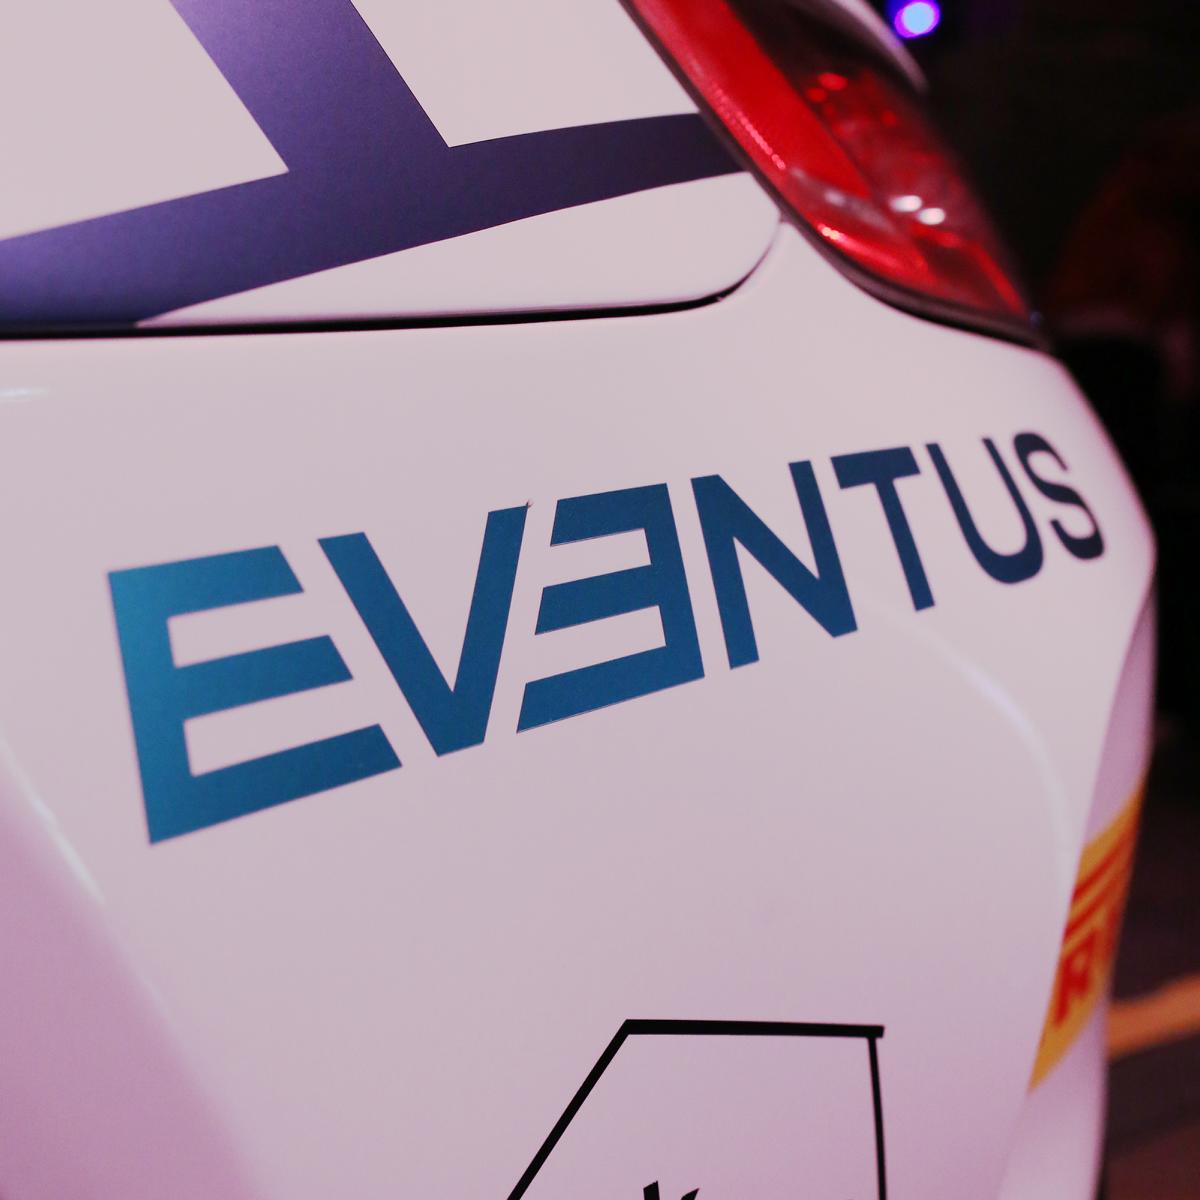 EVENTUS Logo auf Rennwagen